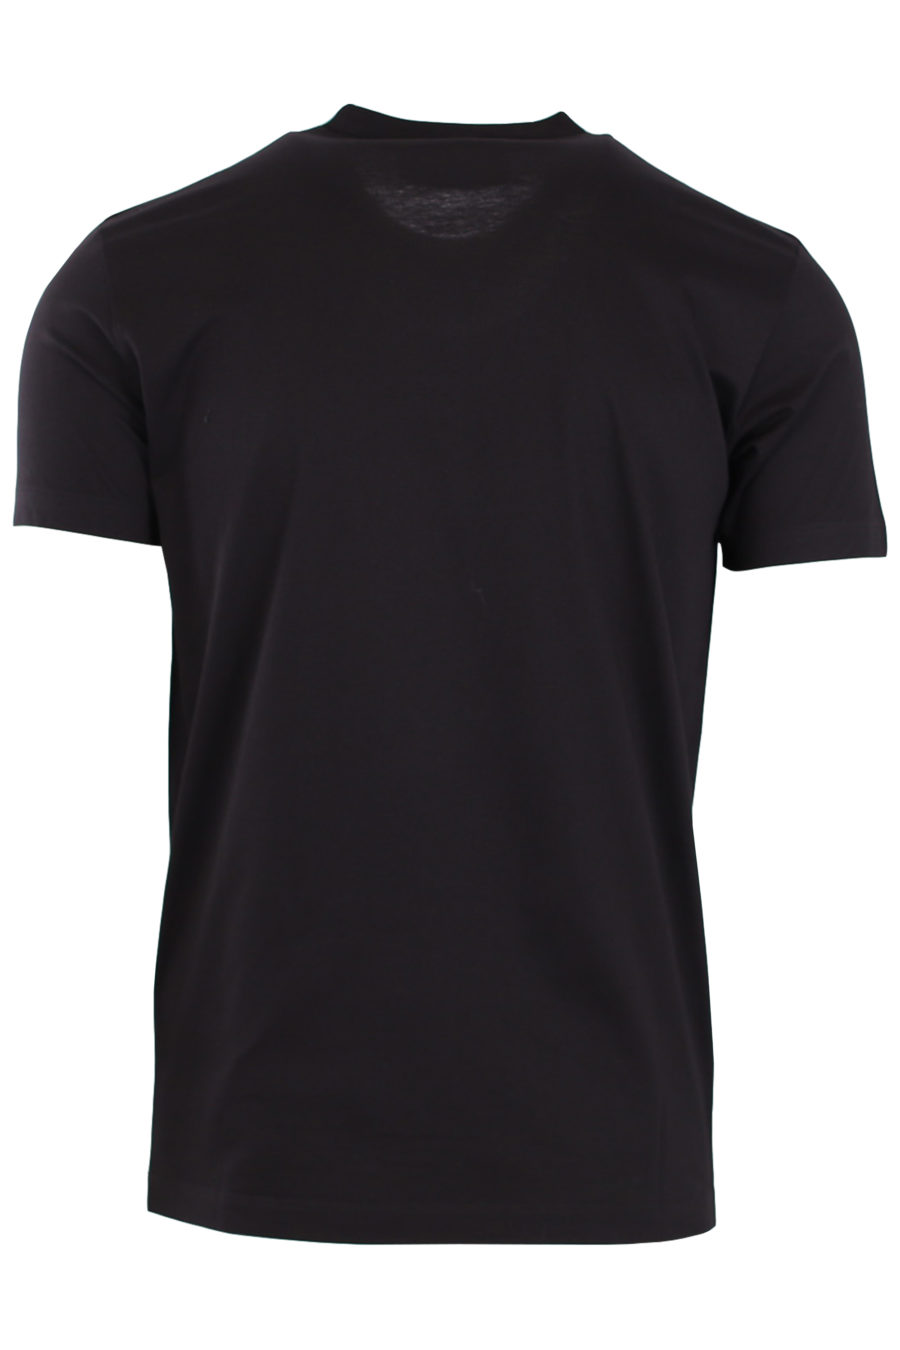 Camiseta negra con logo y estampado de perro - 10c0e061418df63043f58fb249c5a5de3e228c51